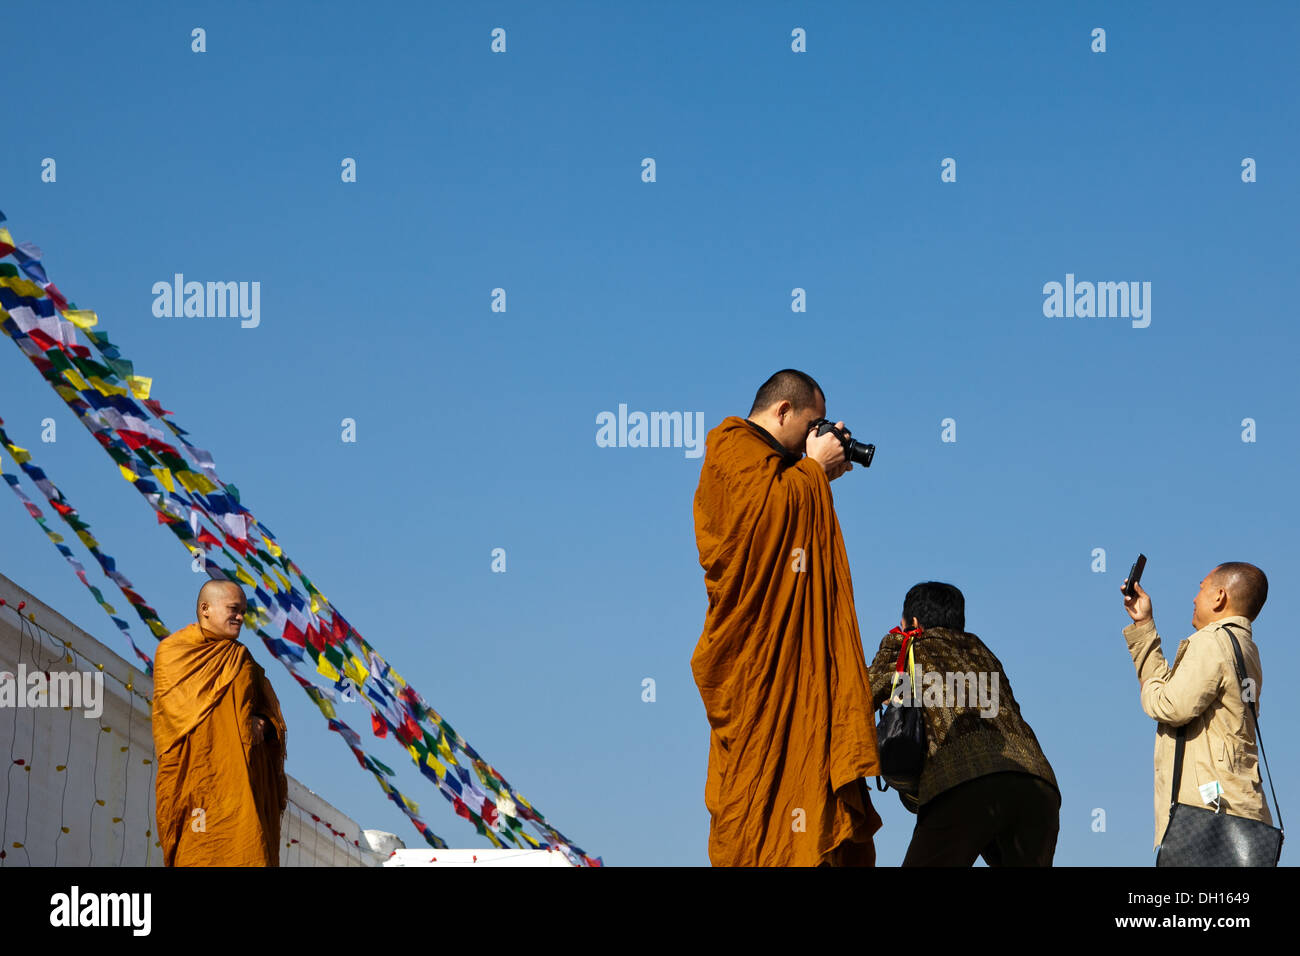 Mönche und Touristen mit Kameras Bodhanath / Bodnath buddhistischen Tempel Kathmandu Nepal - Gegenüberstellung von Religion und Technik Stockfoto